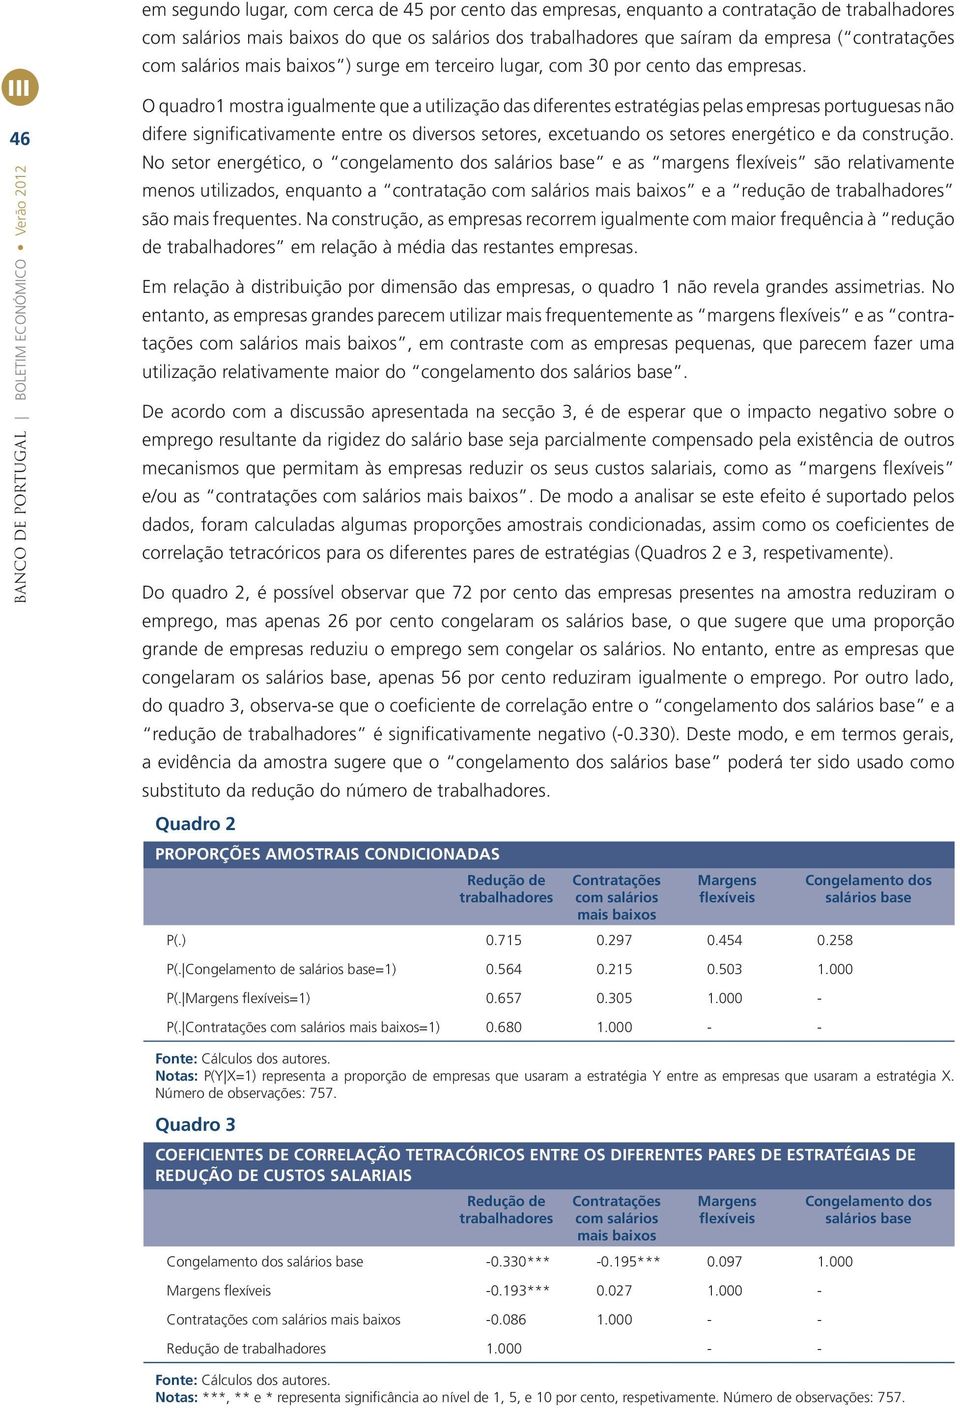 O quadro1 mostra gualmente que a utlzação das dferentes estratégas pelas empresas portuguesas não dfere sgnfcatvamente entre os dversos setores, excetuando os setores energétco e da construção.